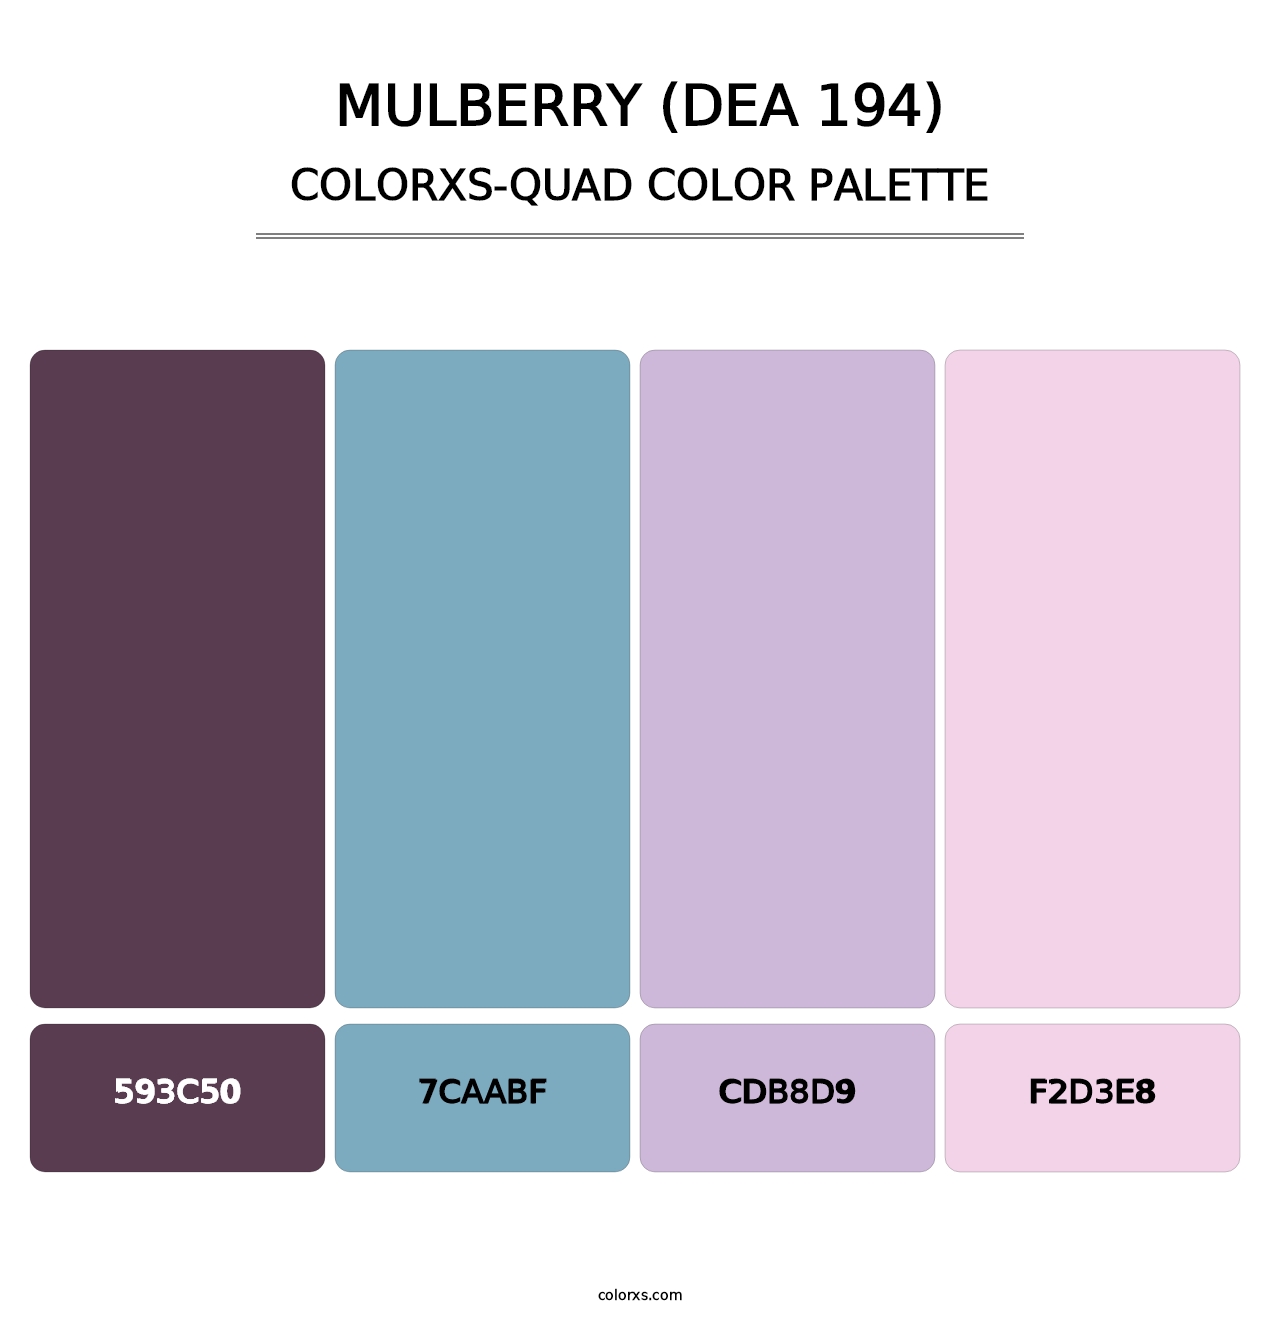 Mulberry (DEA 194) - Colorxs Quad Palette